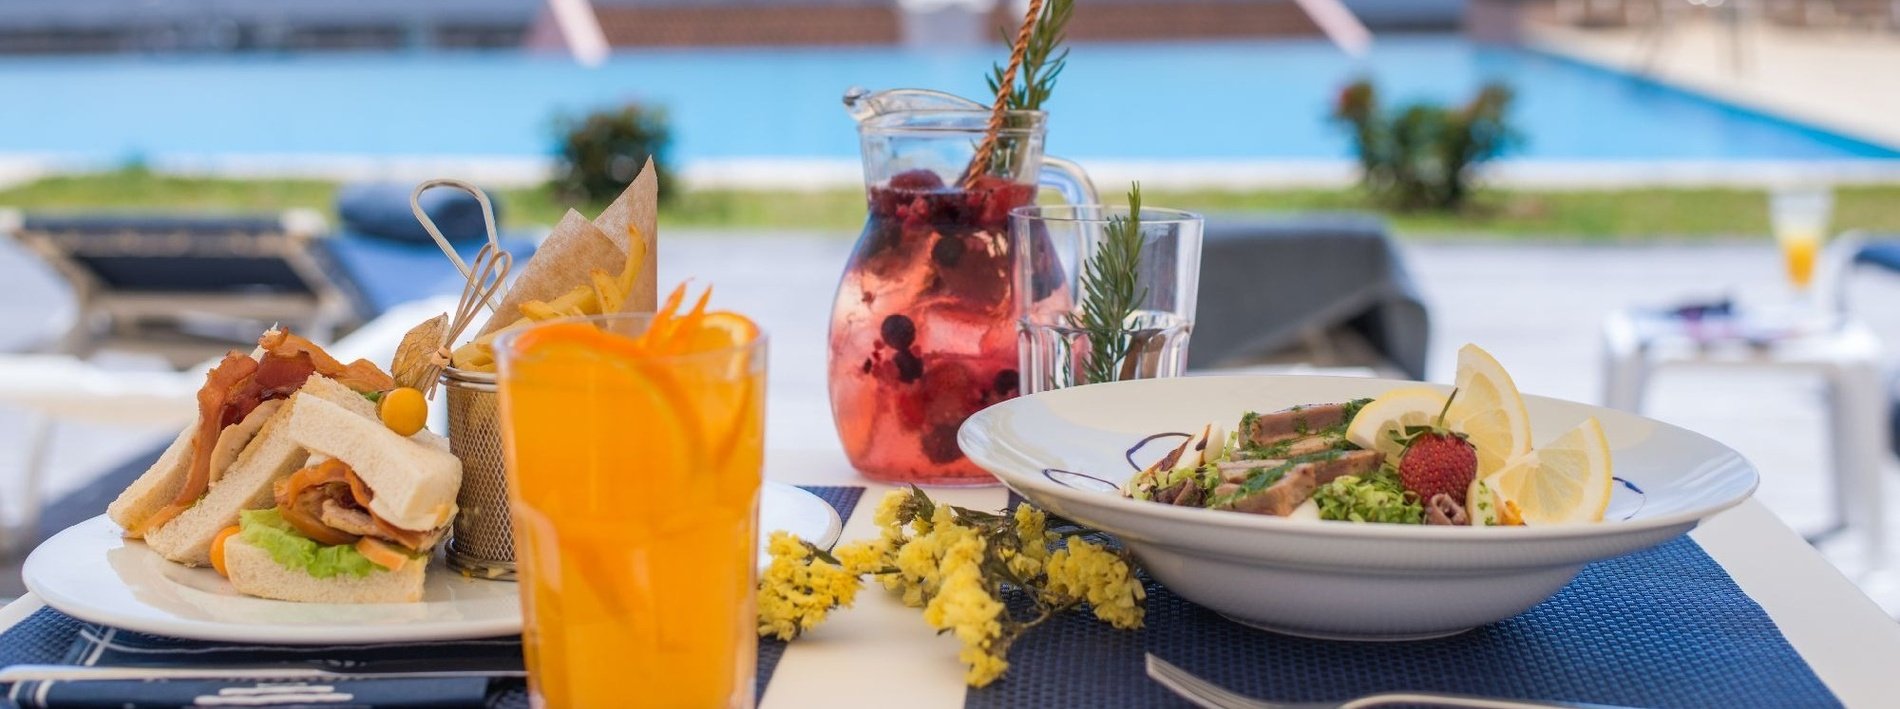 una mesa con un plato de comida y un vaso de jugo de naranja